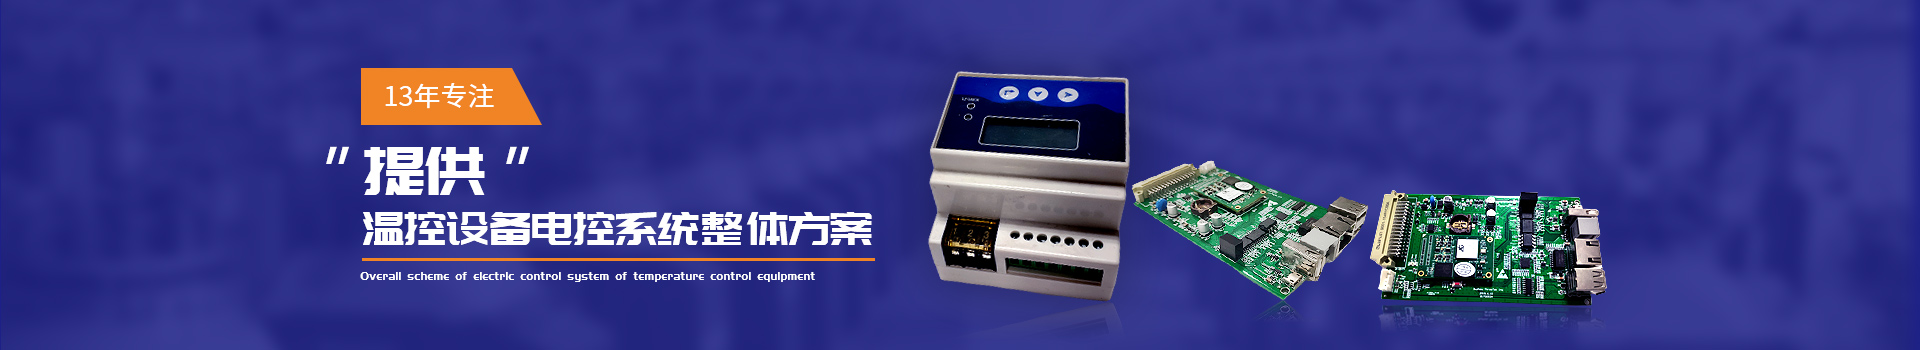 三泰测控13年专注提供温控设备电控系统整体方案